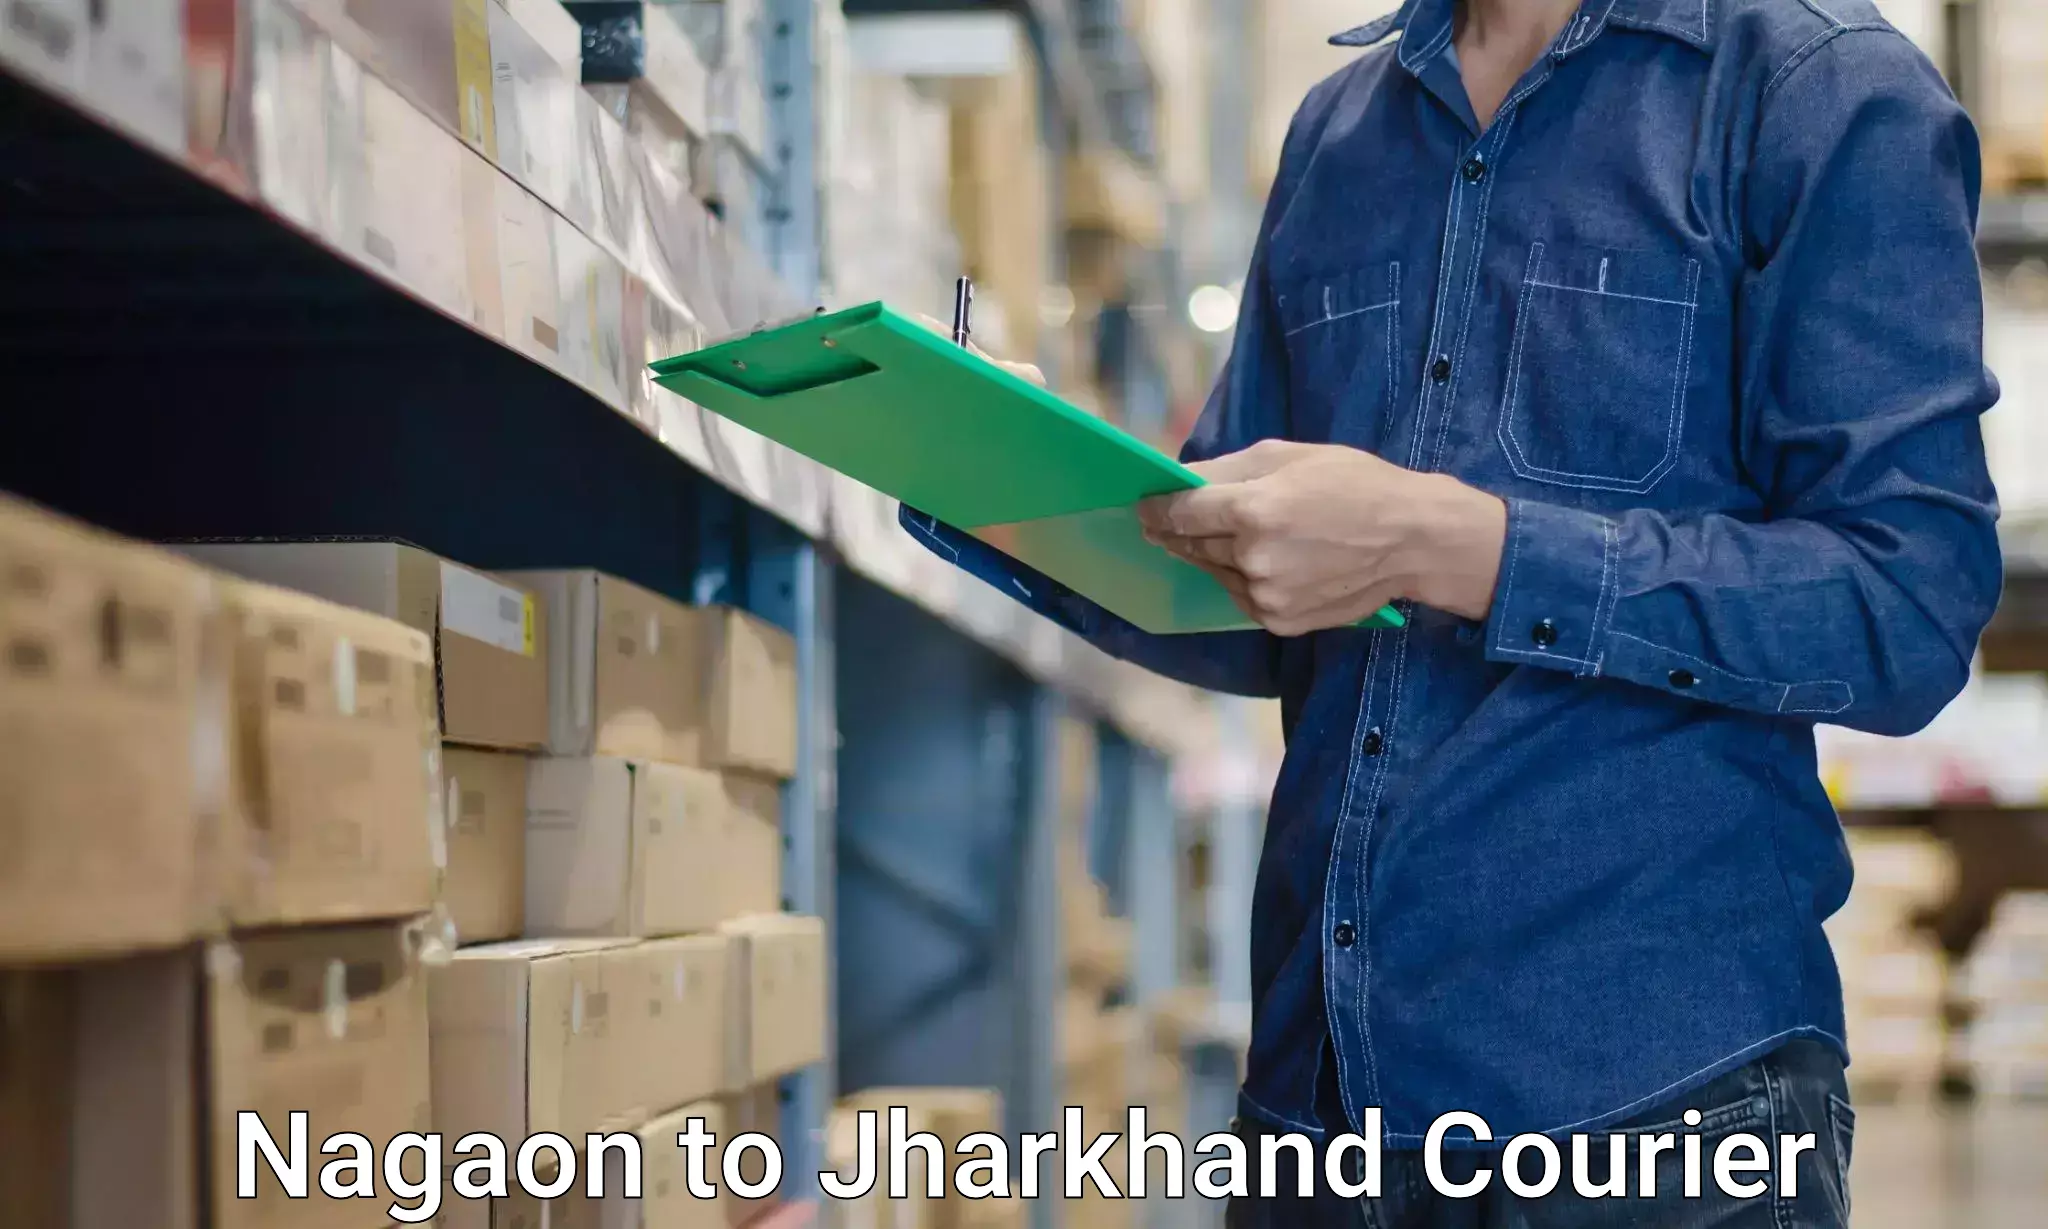 Home goods moving company Nagaon to Jharkhand